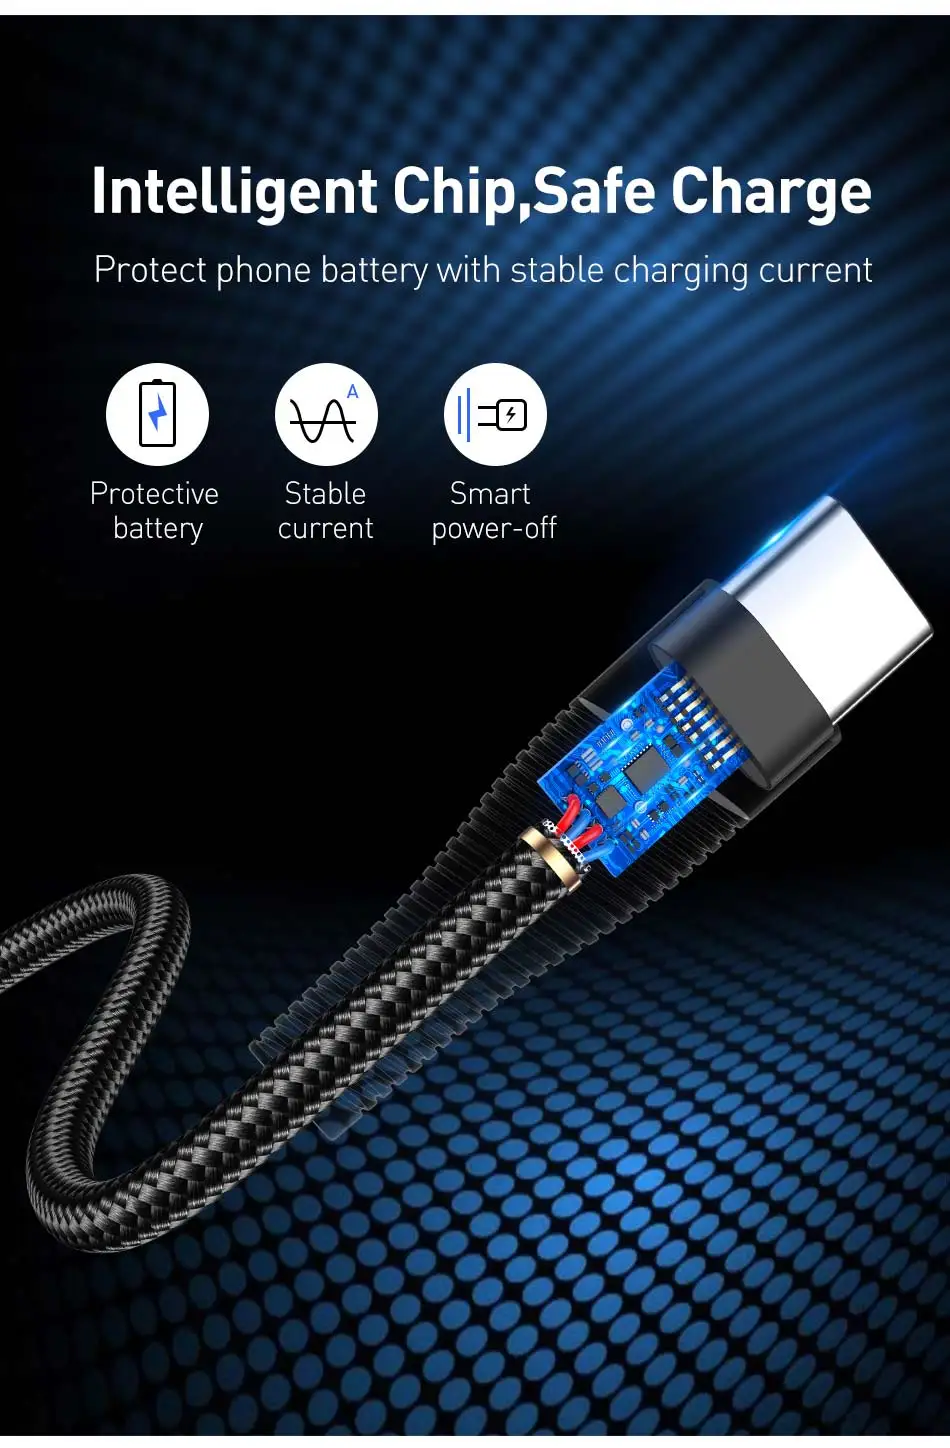 USLION 3A type-C кабель USB для быстрой зарядки samsung S10 S9 S8 A50 Xiaomi Redmi k20 Pro USB-C передачи данных кабель для мобильного телефона type-C